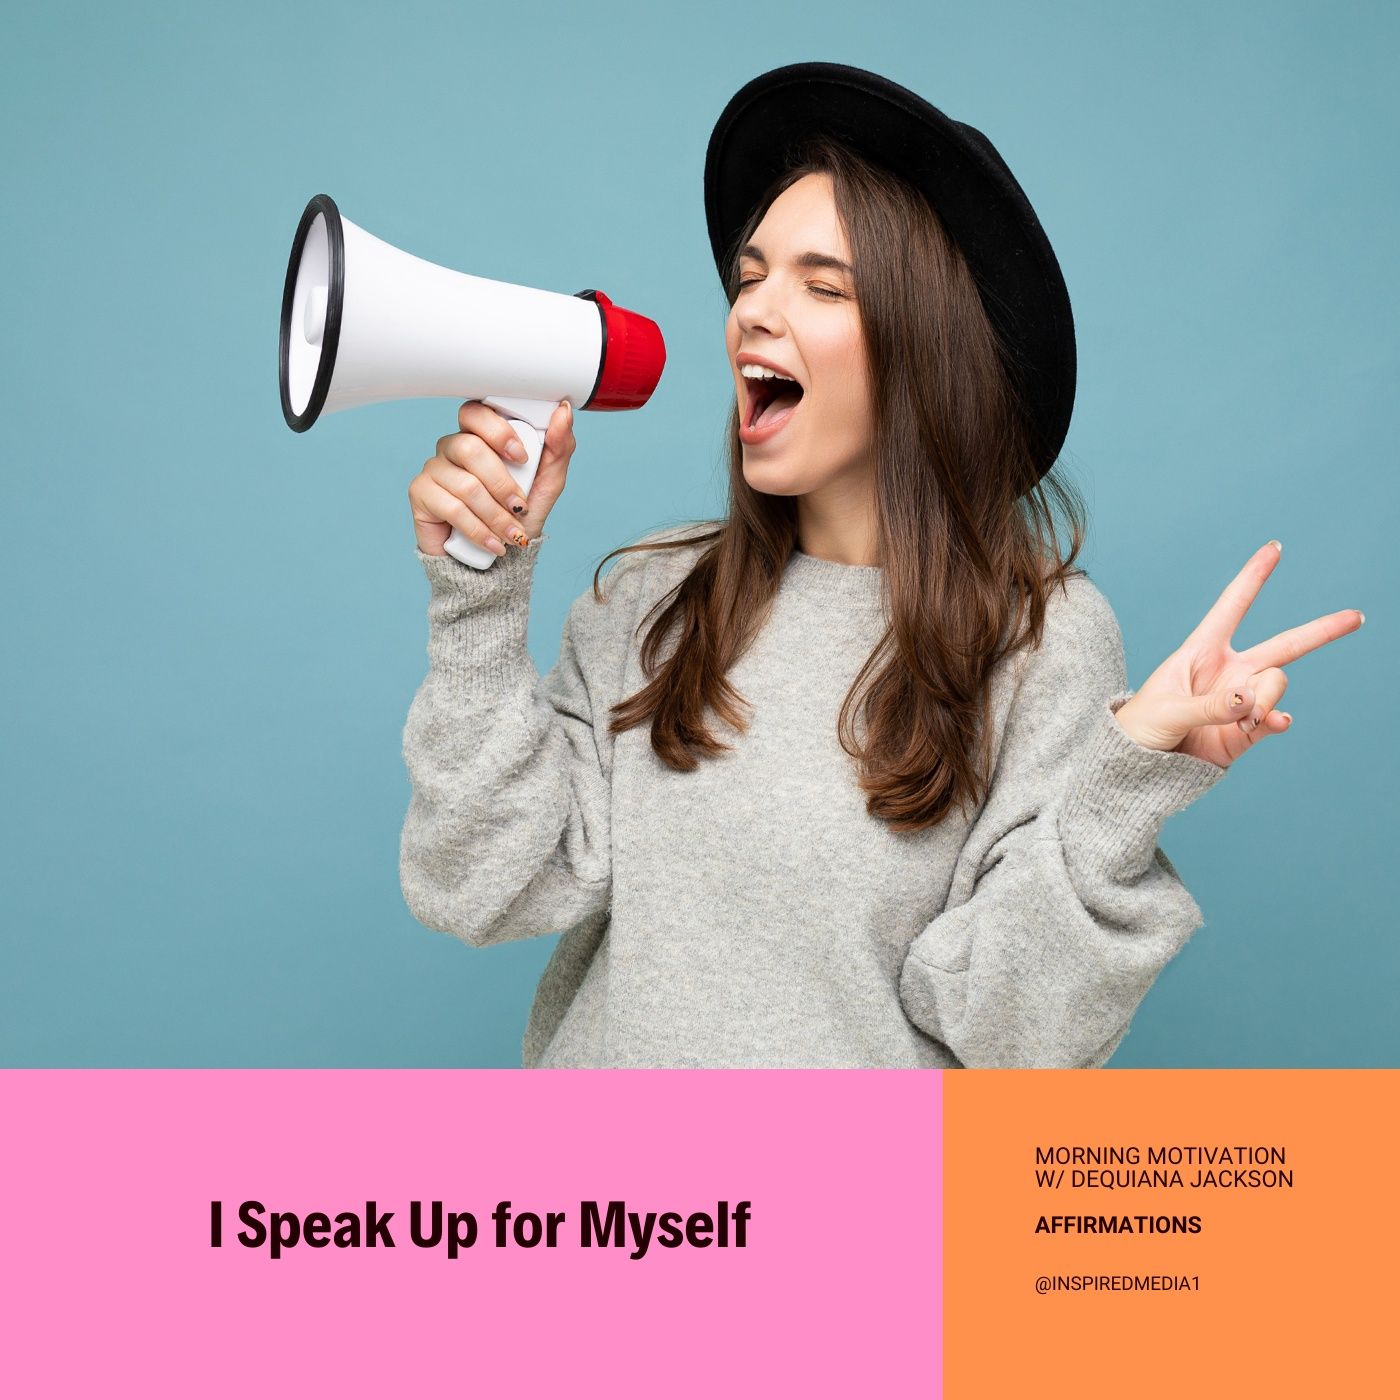 I Speak Up for Myself - Affirmation Series